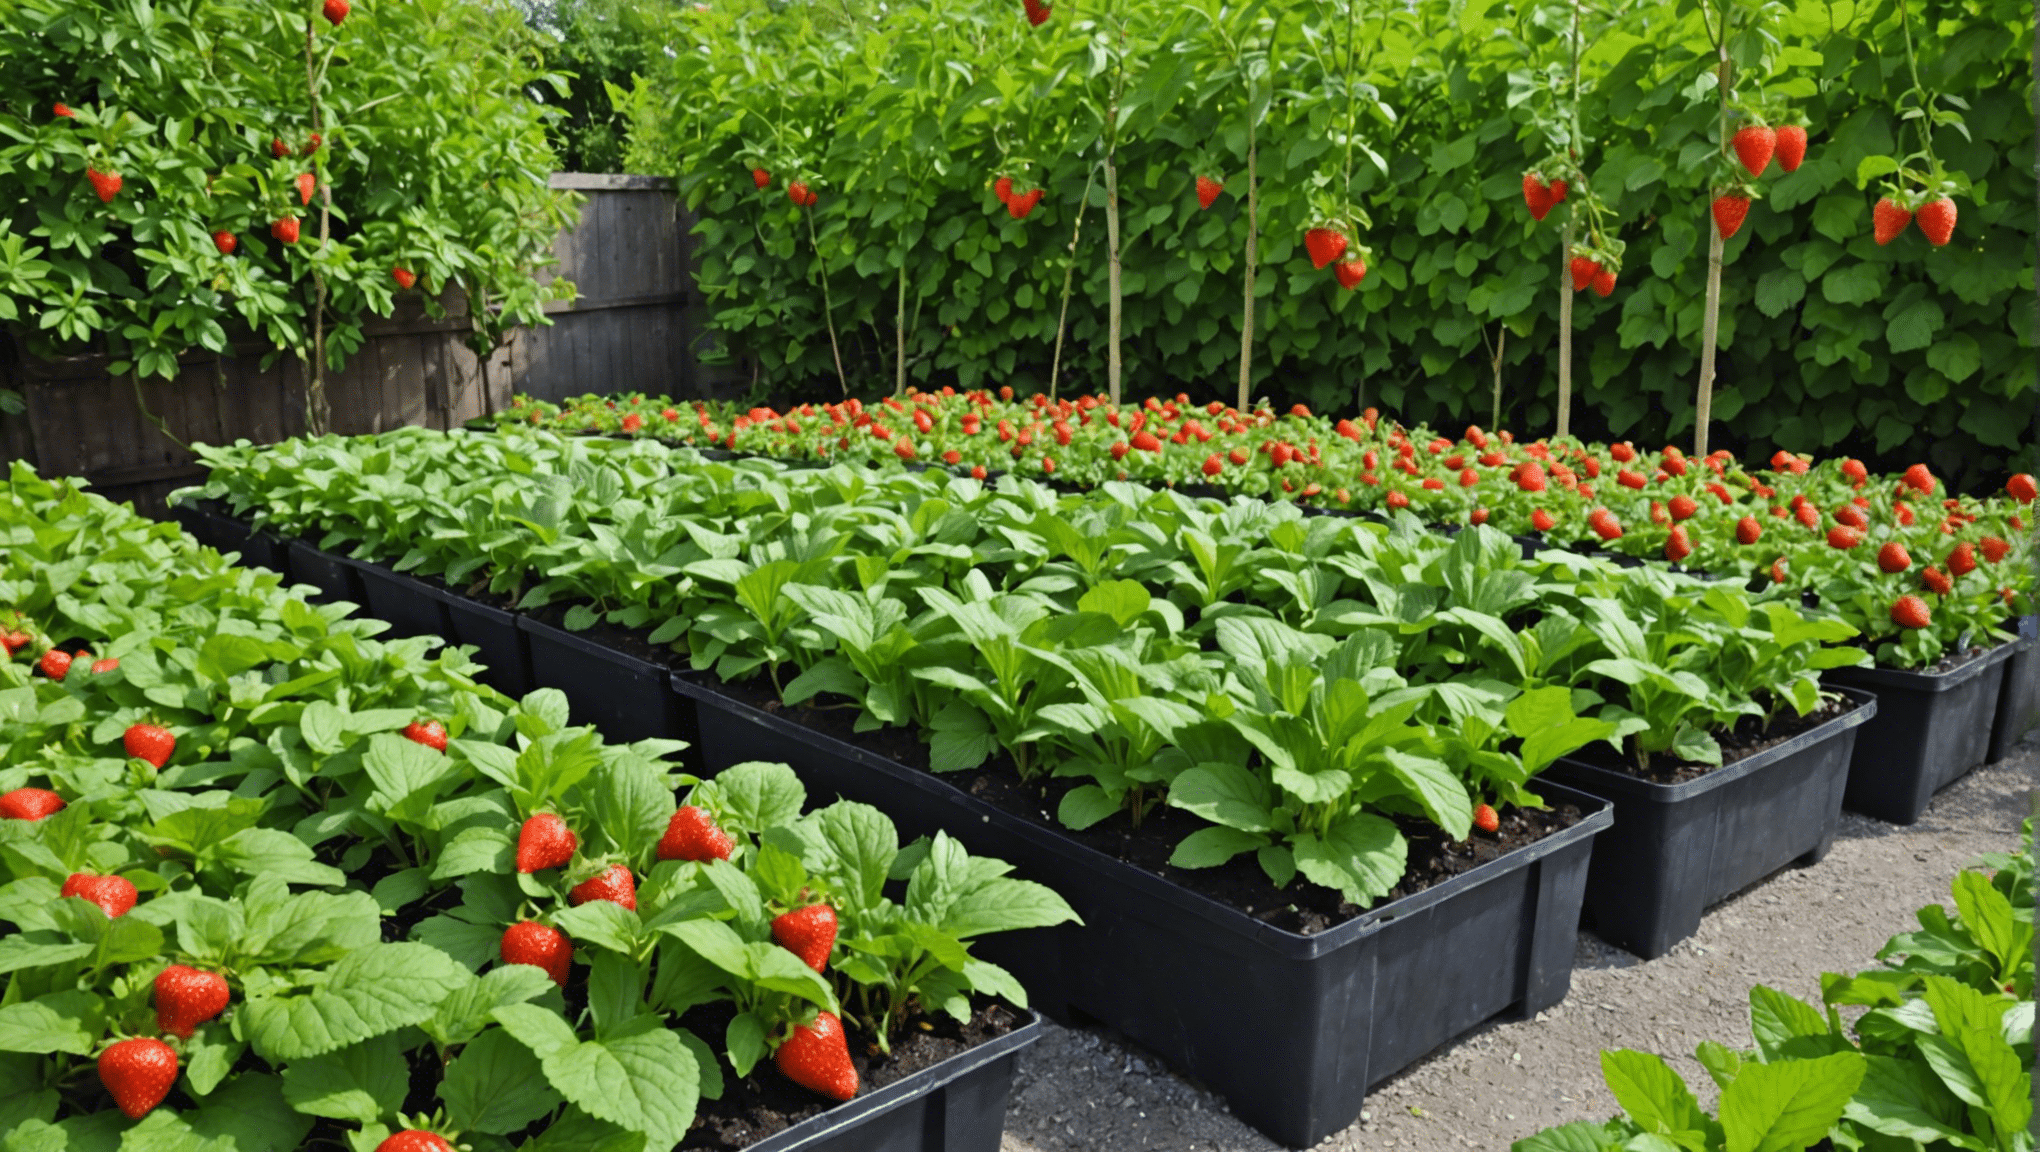 découvrez comment aménager un paradis pour les fraisiers dans votre jardin grâce à nos conseils pratiques et faciles à suivre pour une récolte abondante et savoureuse.